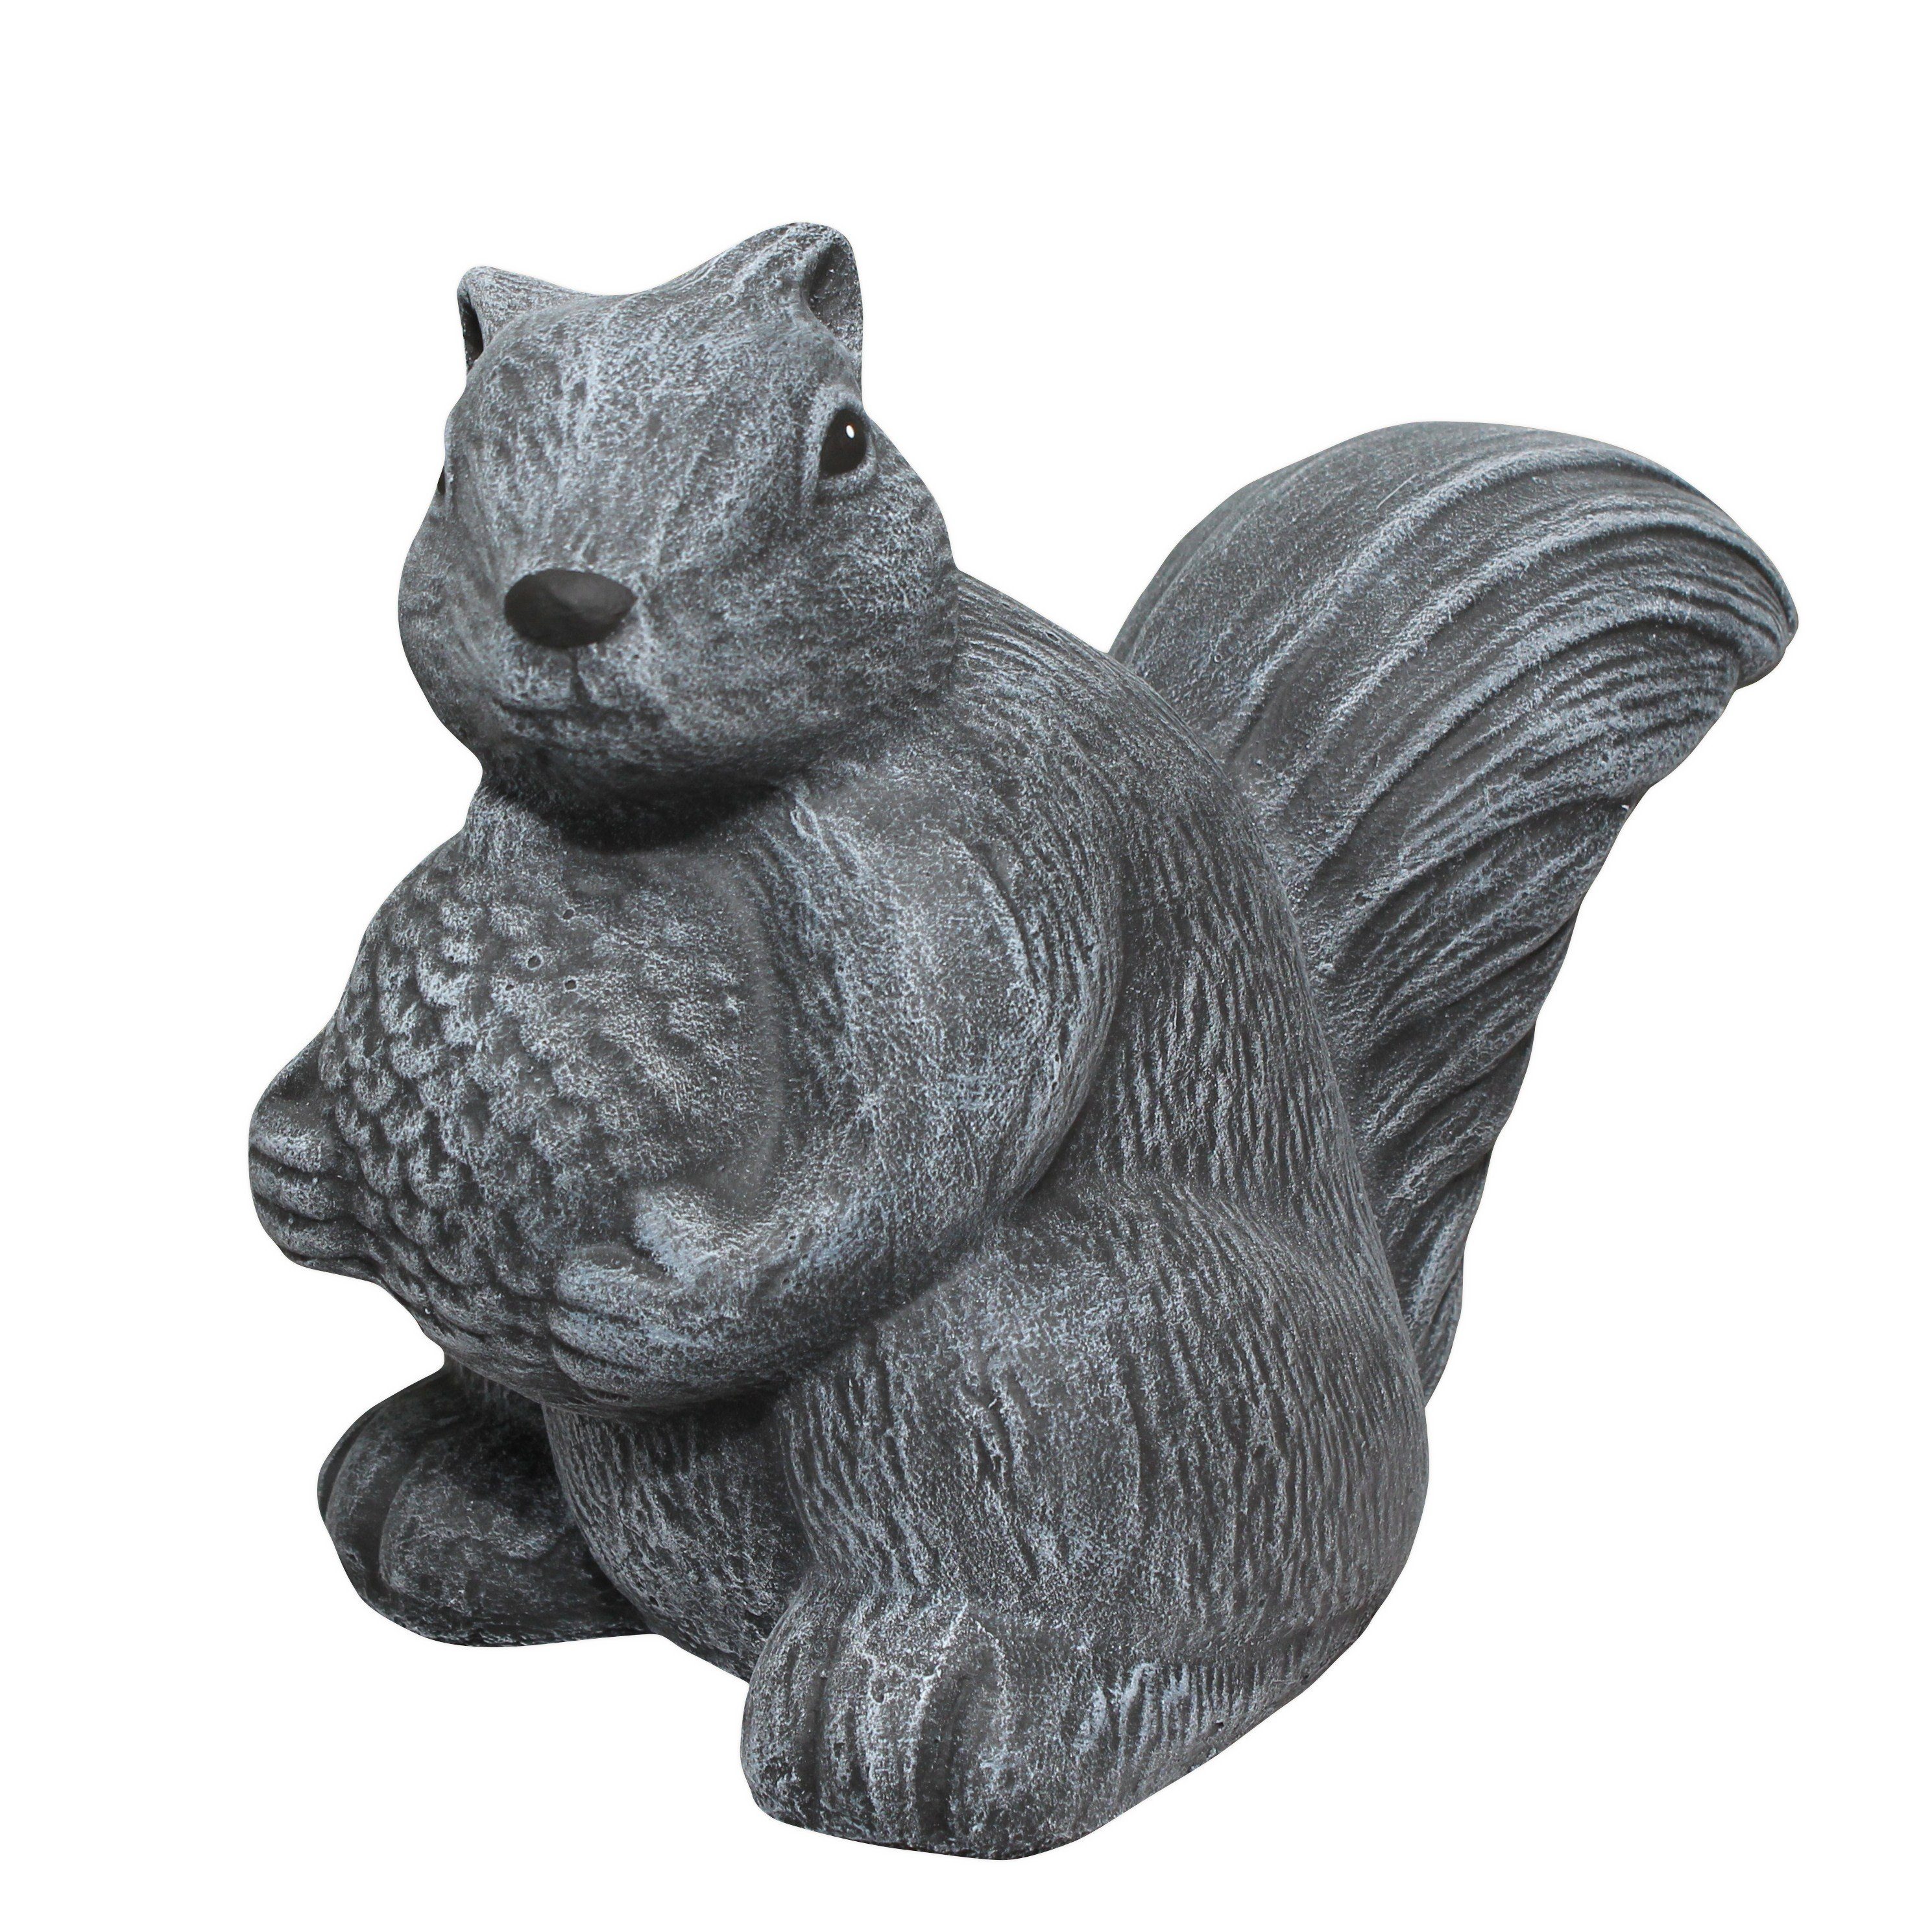 Tiefes Kunsthandwerk Gartenfigur Steinfigur Eichhörnchen stehend - als Dekofigur für Haus und Garten, frostsicher, winterfest, Made in Germany grau | Figuren